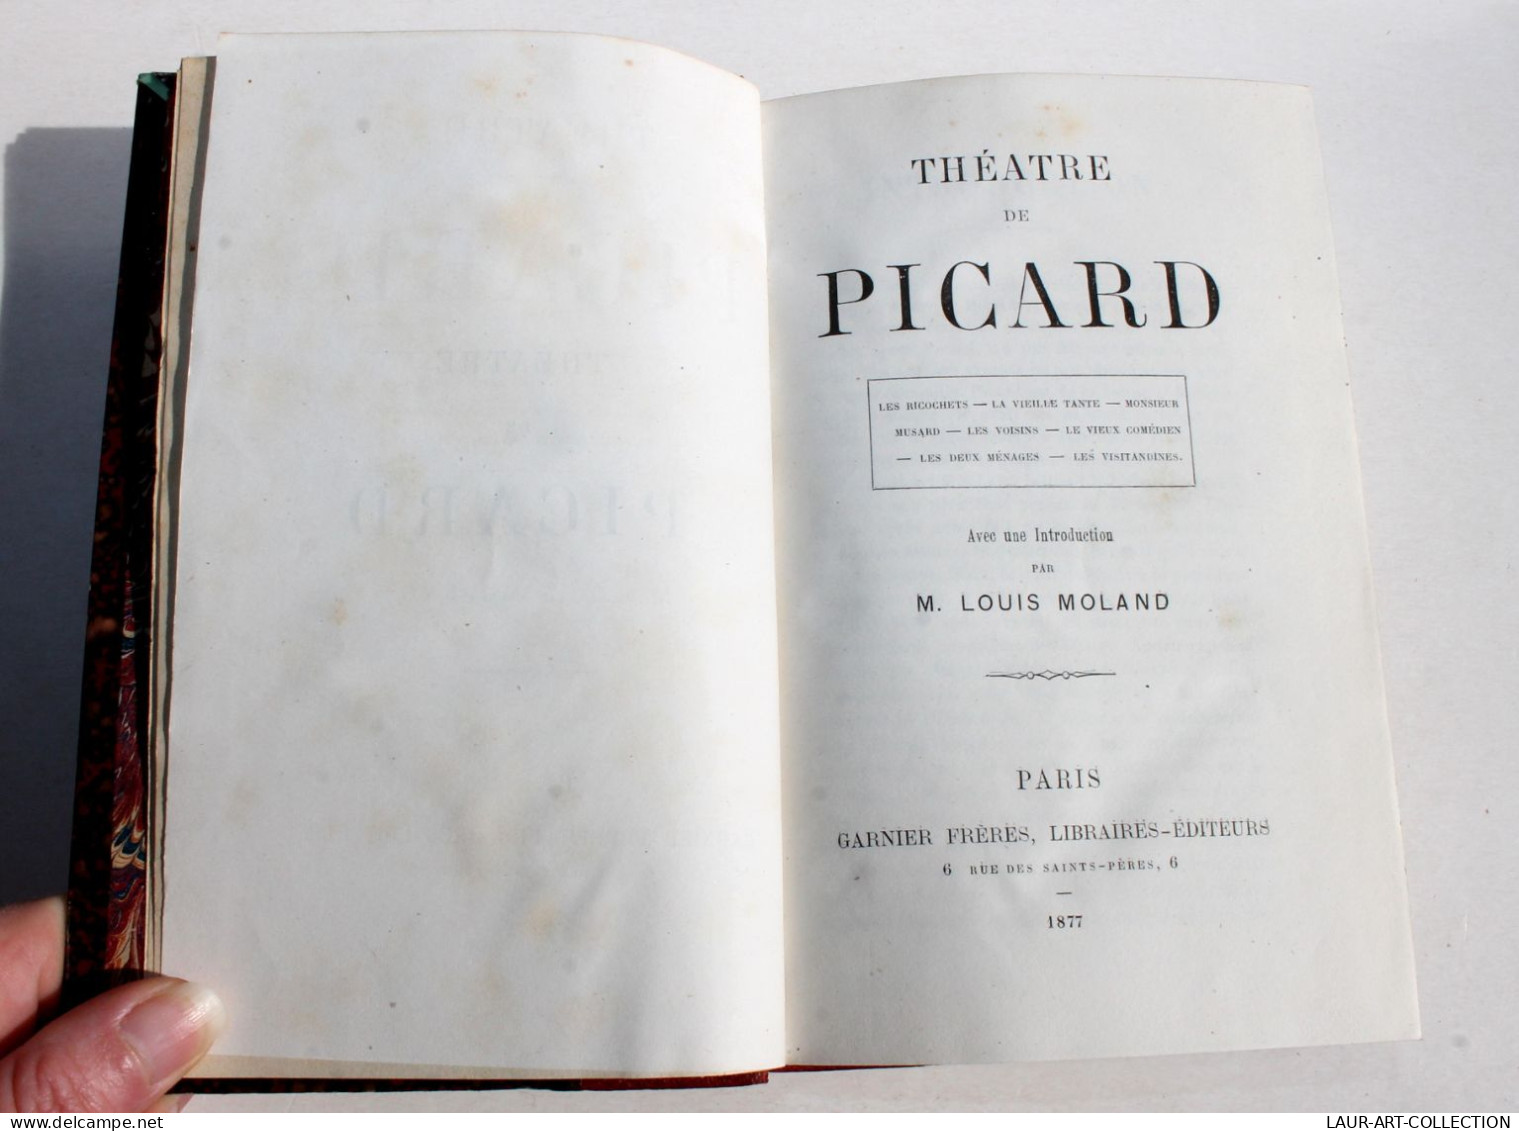 THEATRE DE PICARD + INTRODUCTION Par LOUIS MOLAND 1877 GARNIER FRERES, RICOCHETS.. / LIVRE ANCIEN FRANCAIS (1803.2) - French Authors